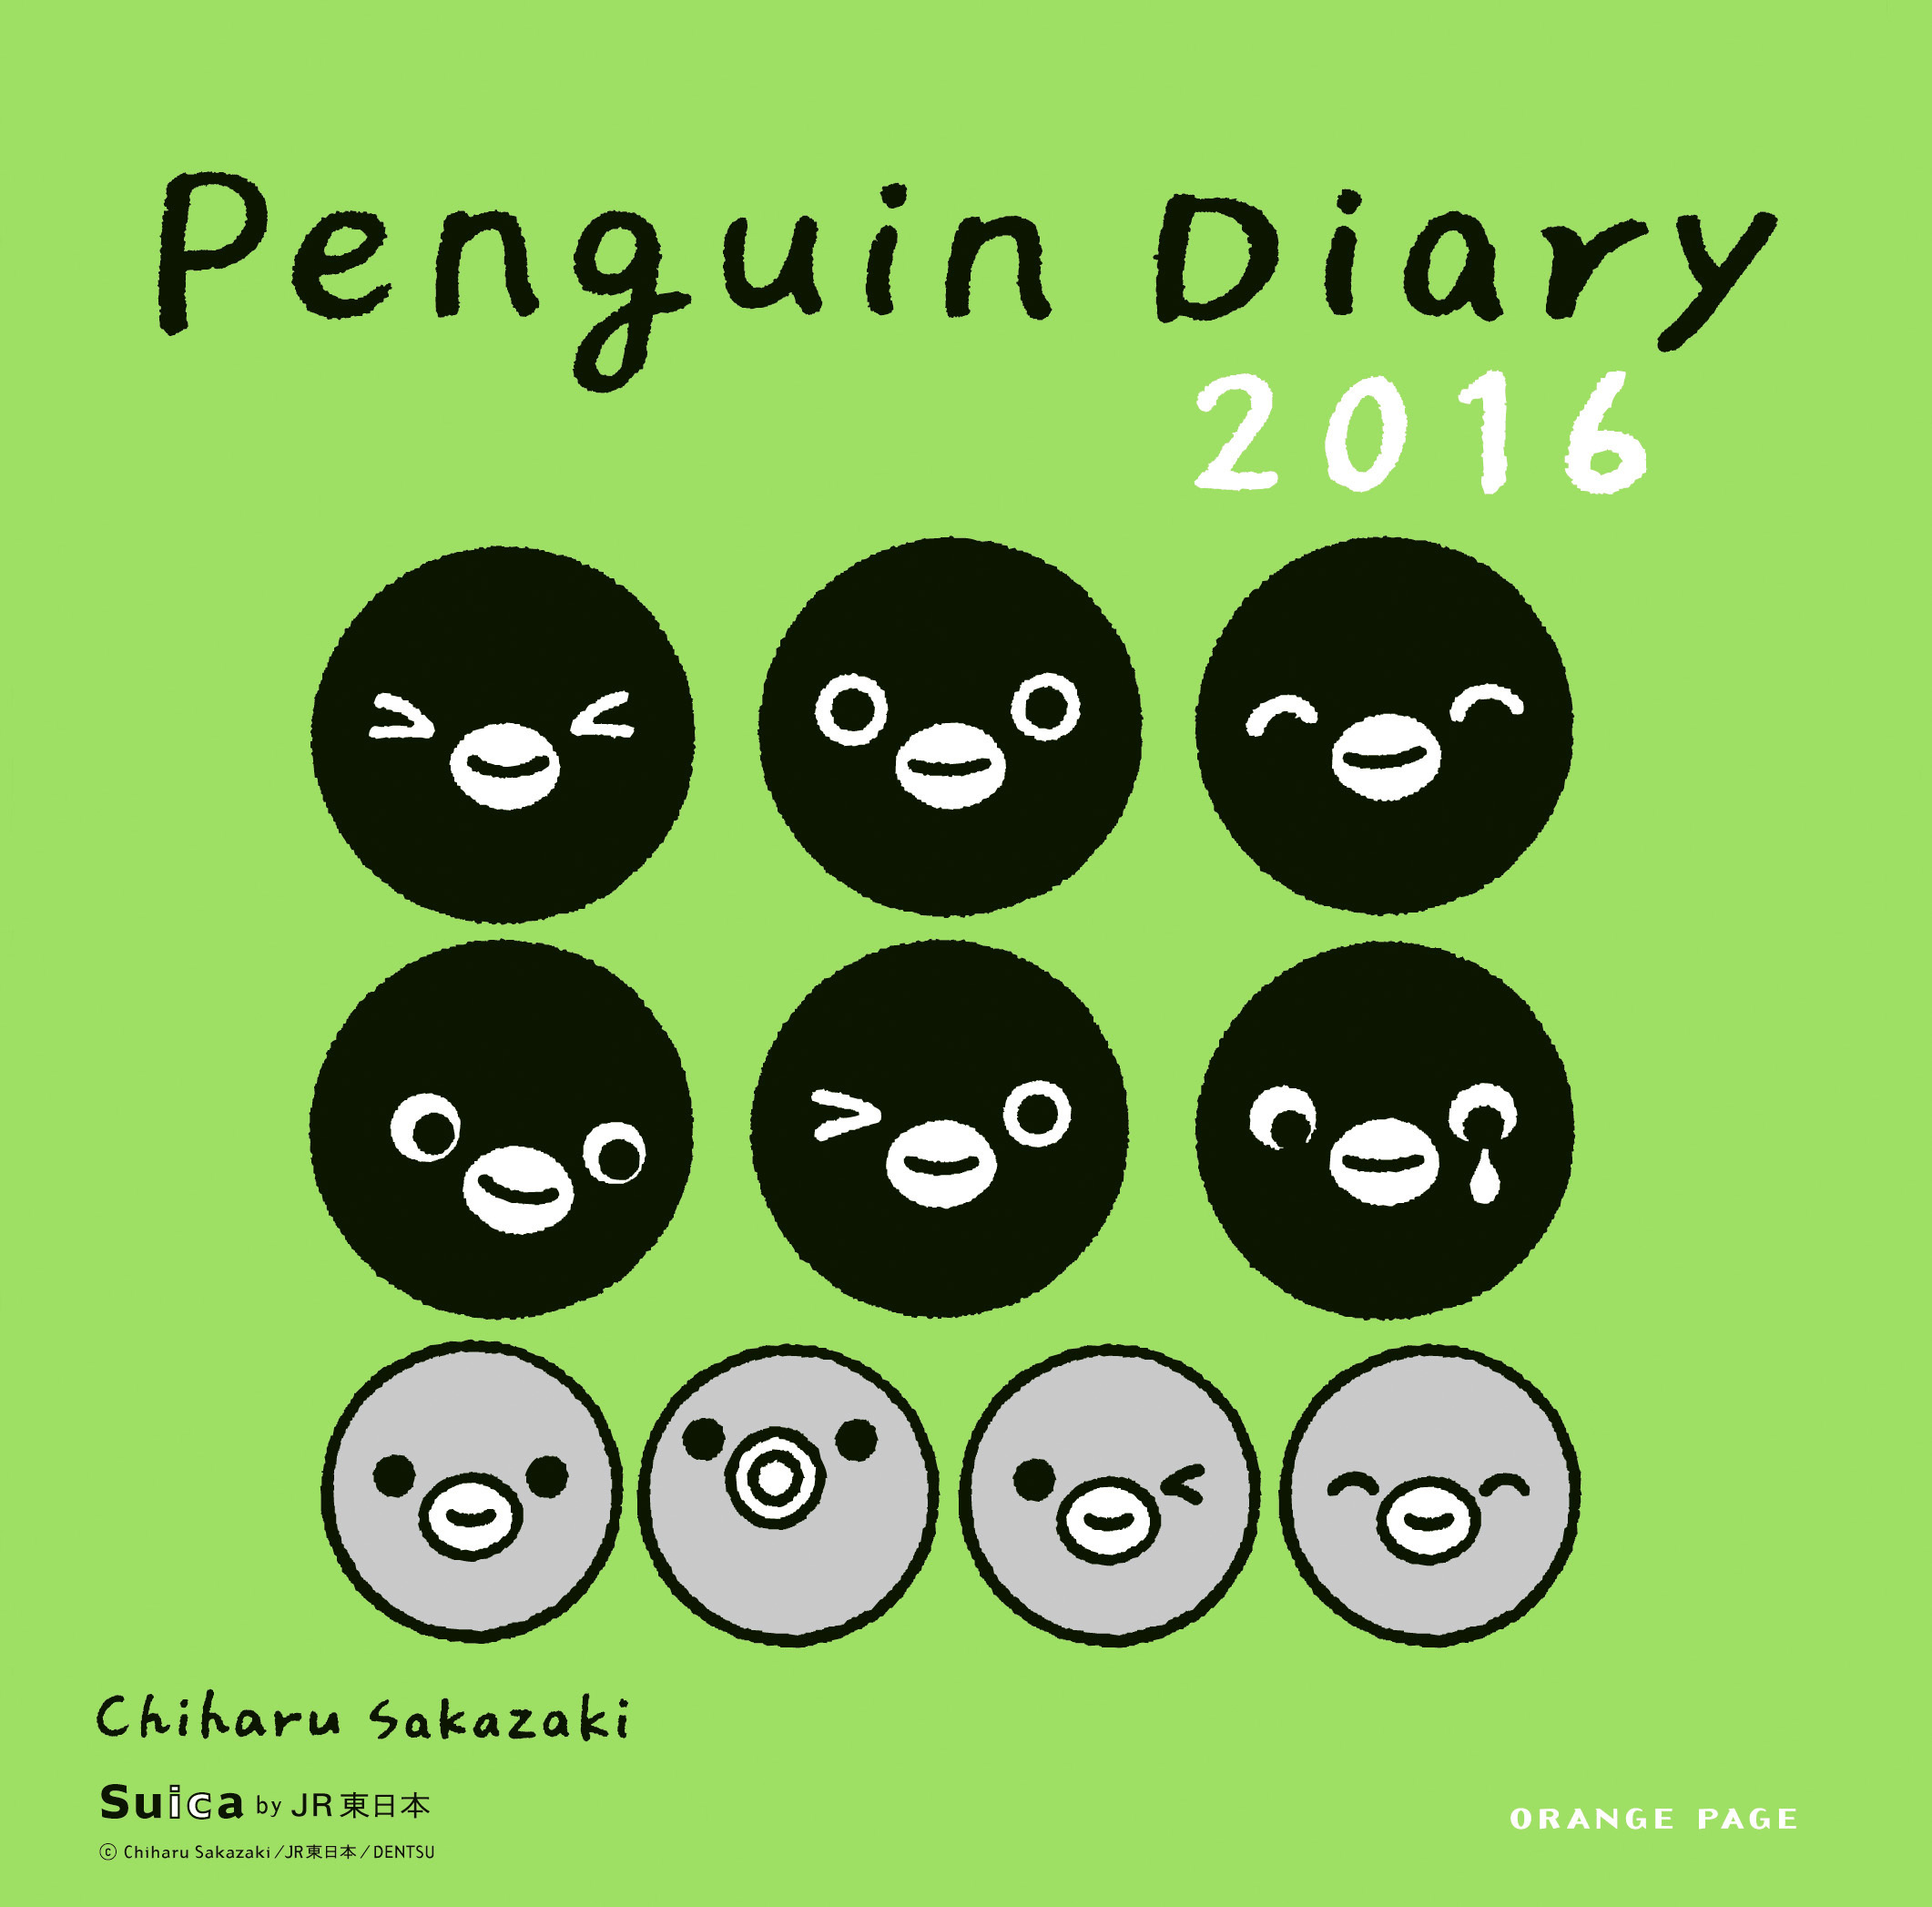 Jr東日本のicカードでおなじみ Suicaのペンギン のかわいい表情が満載 ペンギンダイアリー16 株式会社オレンジページのプレスリリース